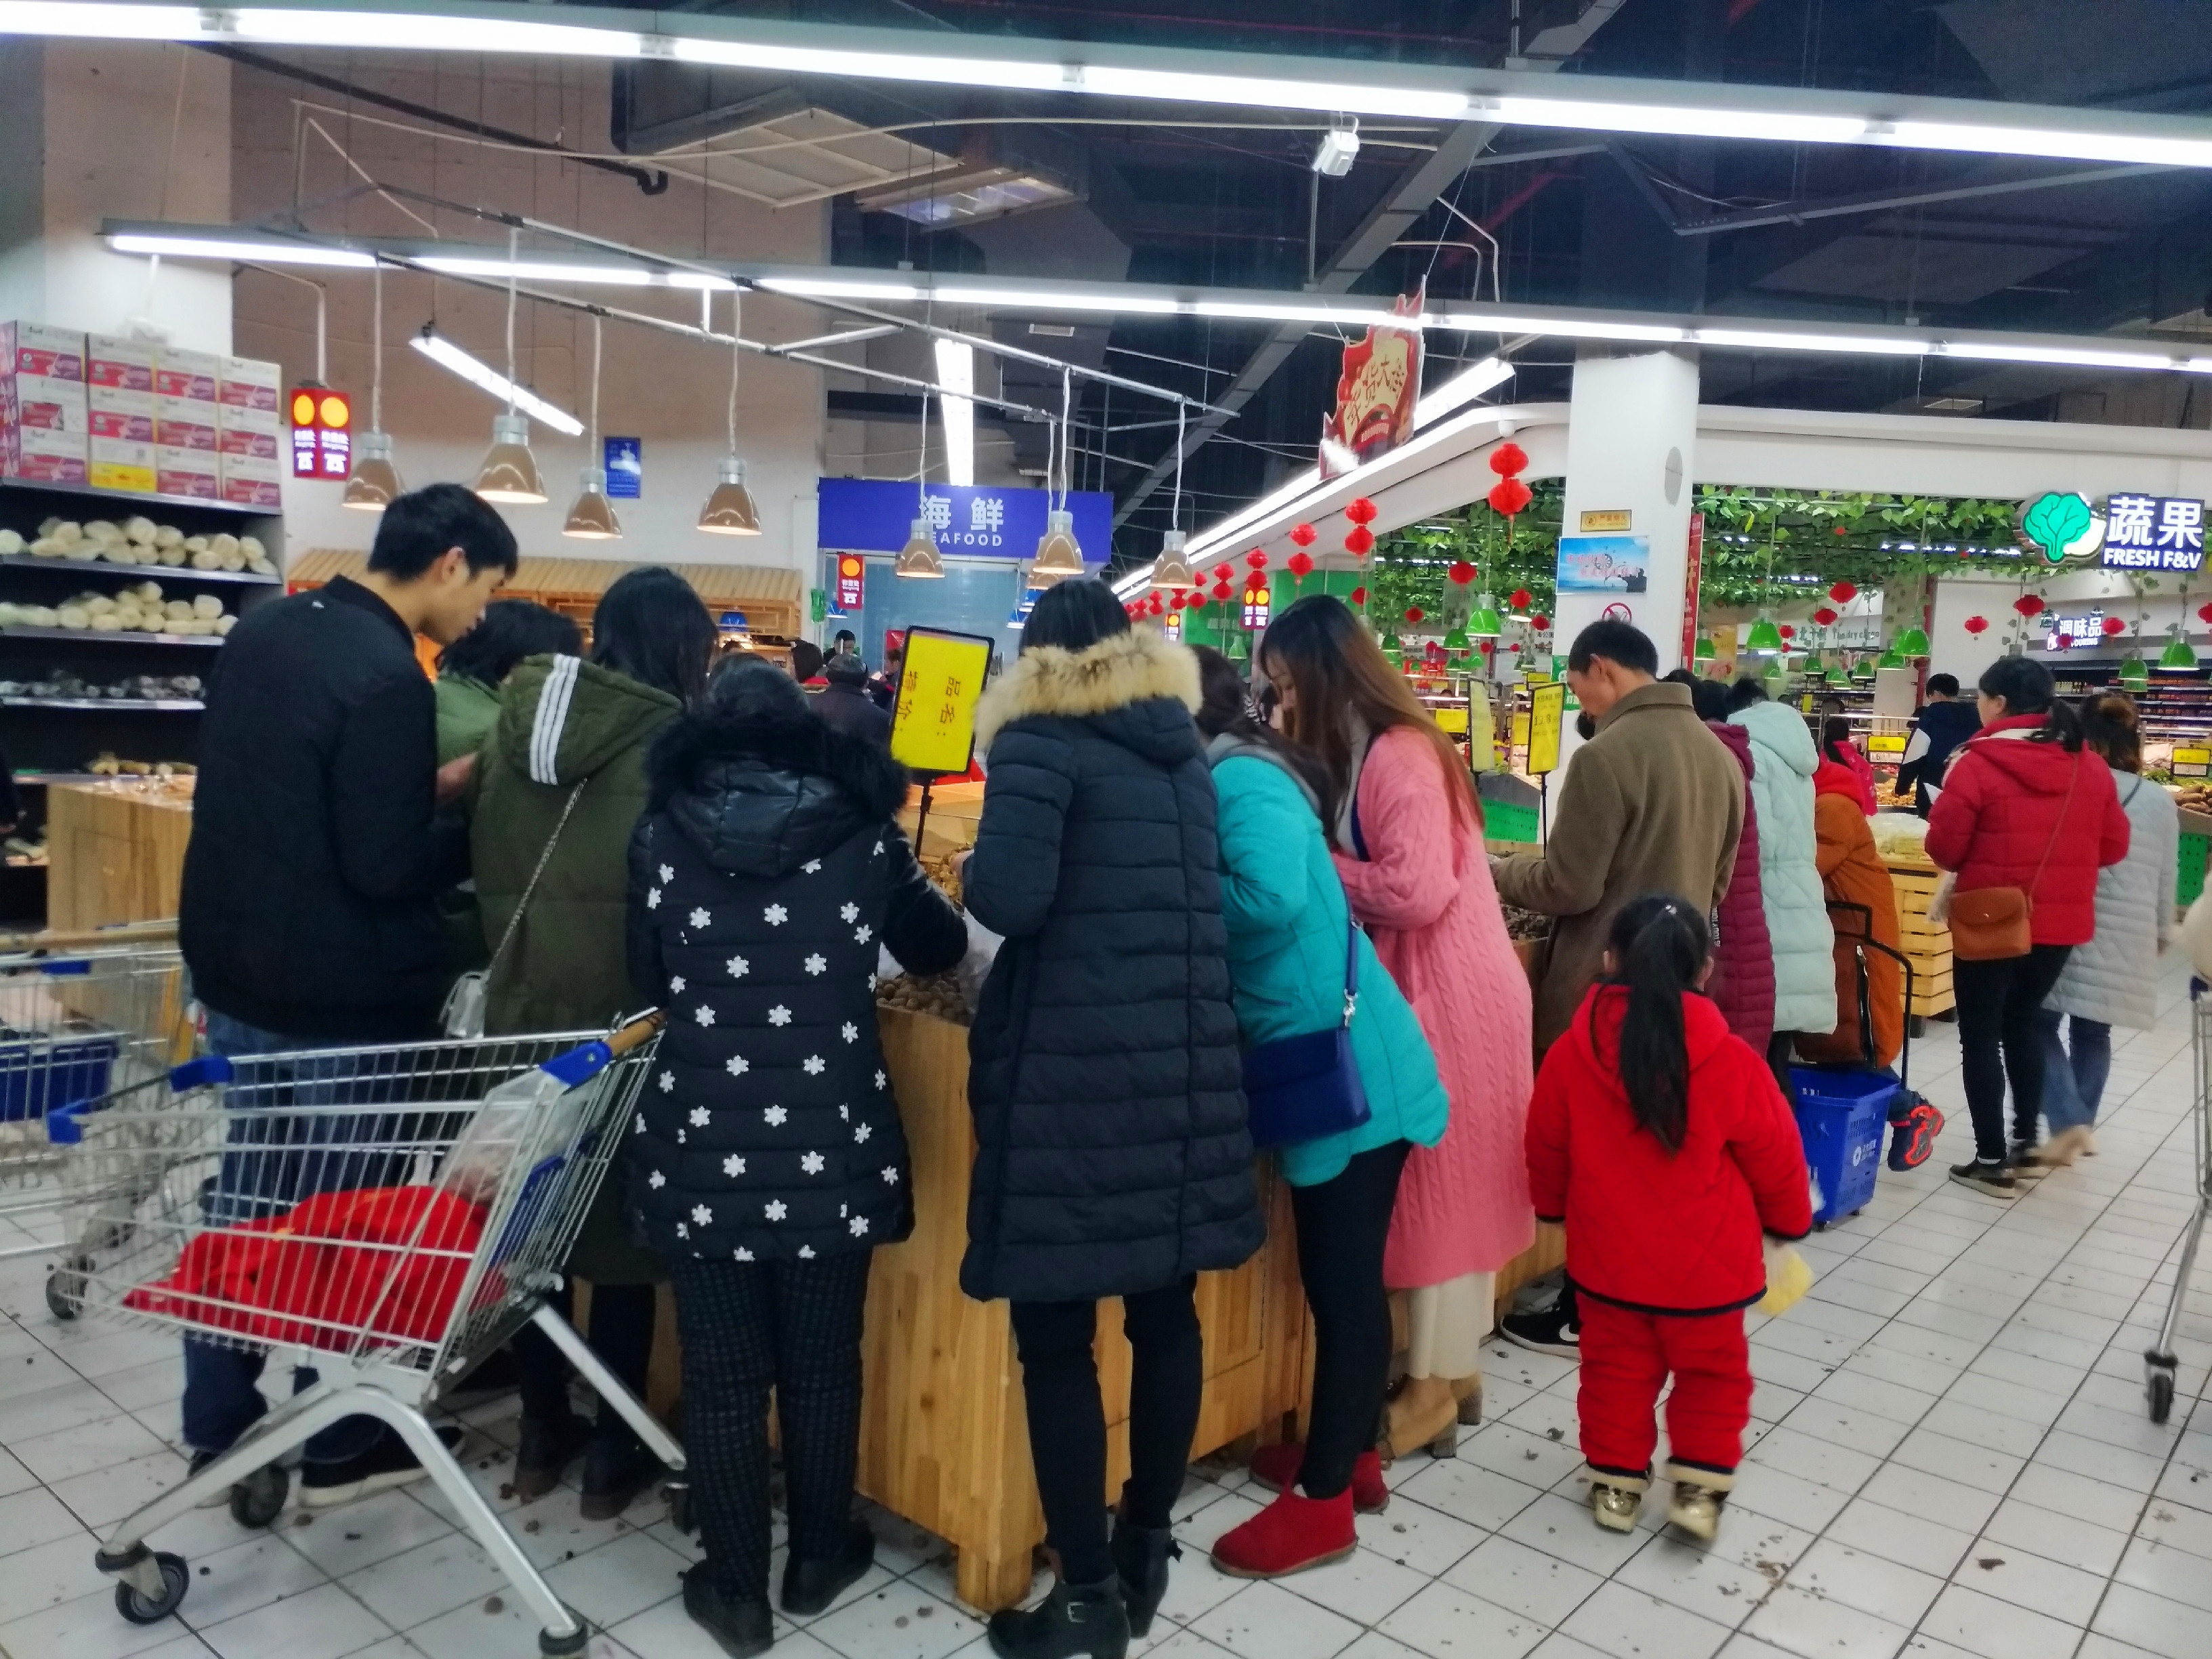 大年三十超市下午4点结束营业,市民趁最后的时间来抢购蔬菜坚果等